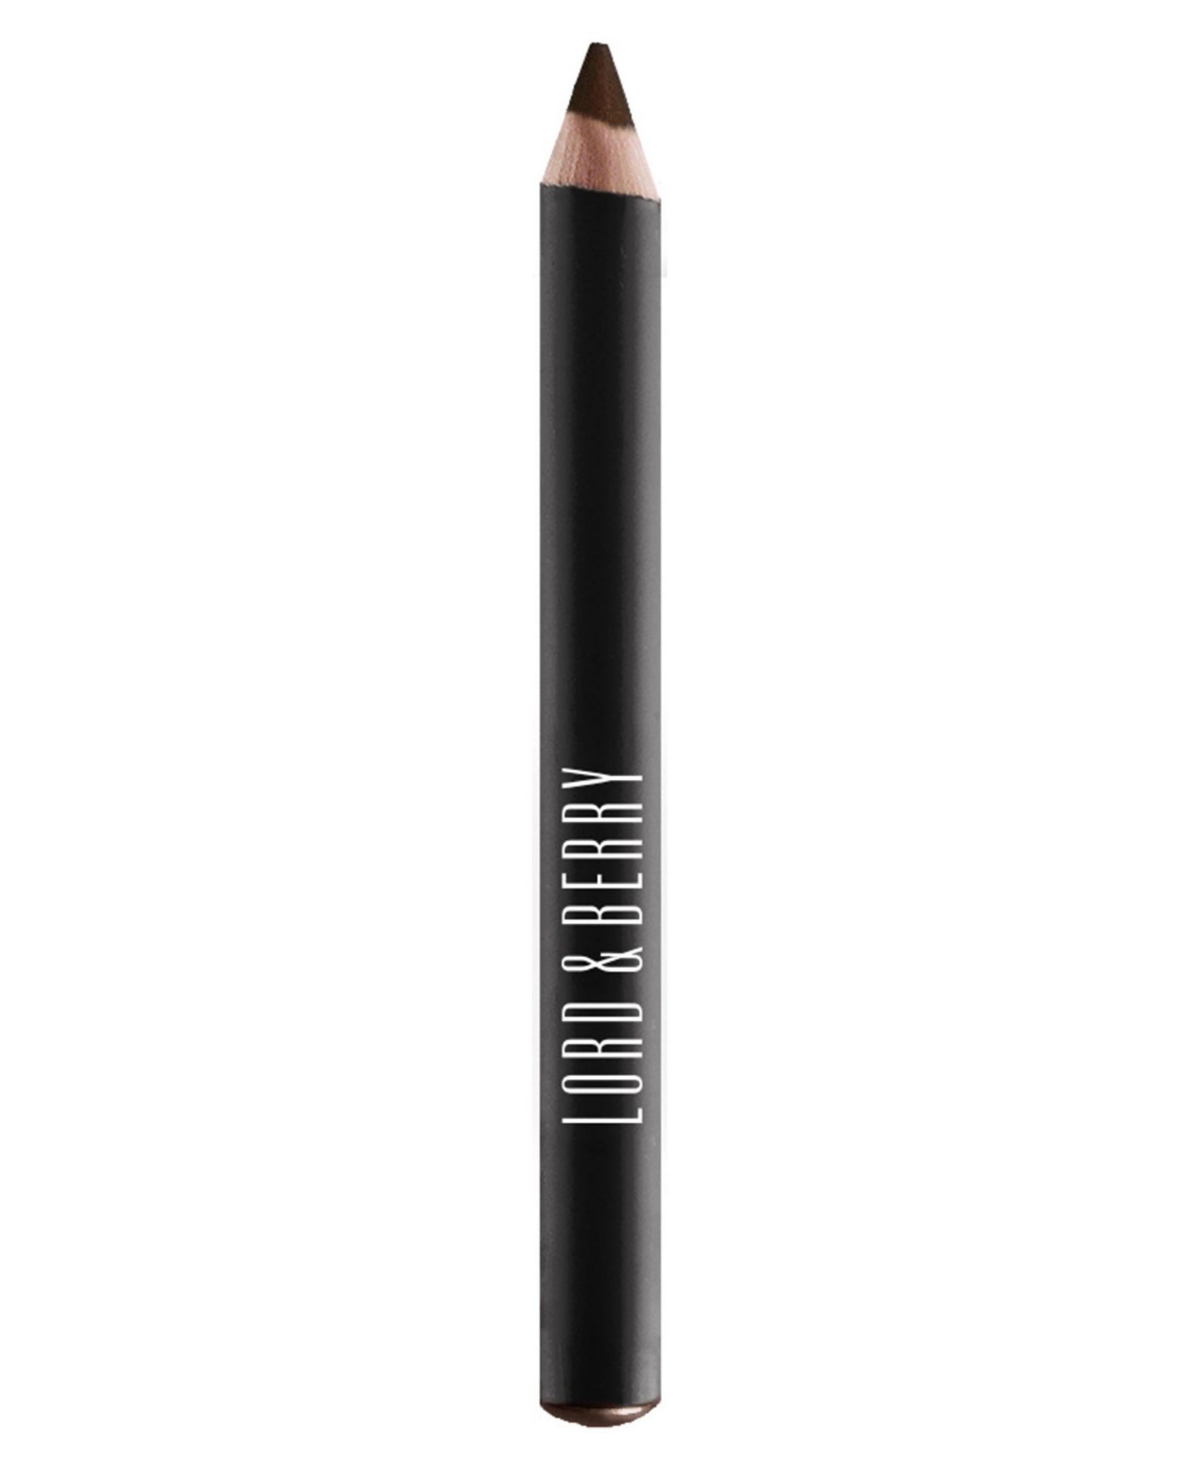 Line Shade Glam Eye Pencil, 0.02 oz - Argento - grey